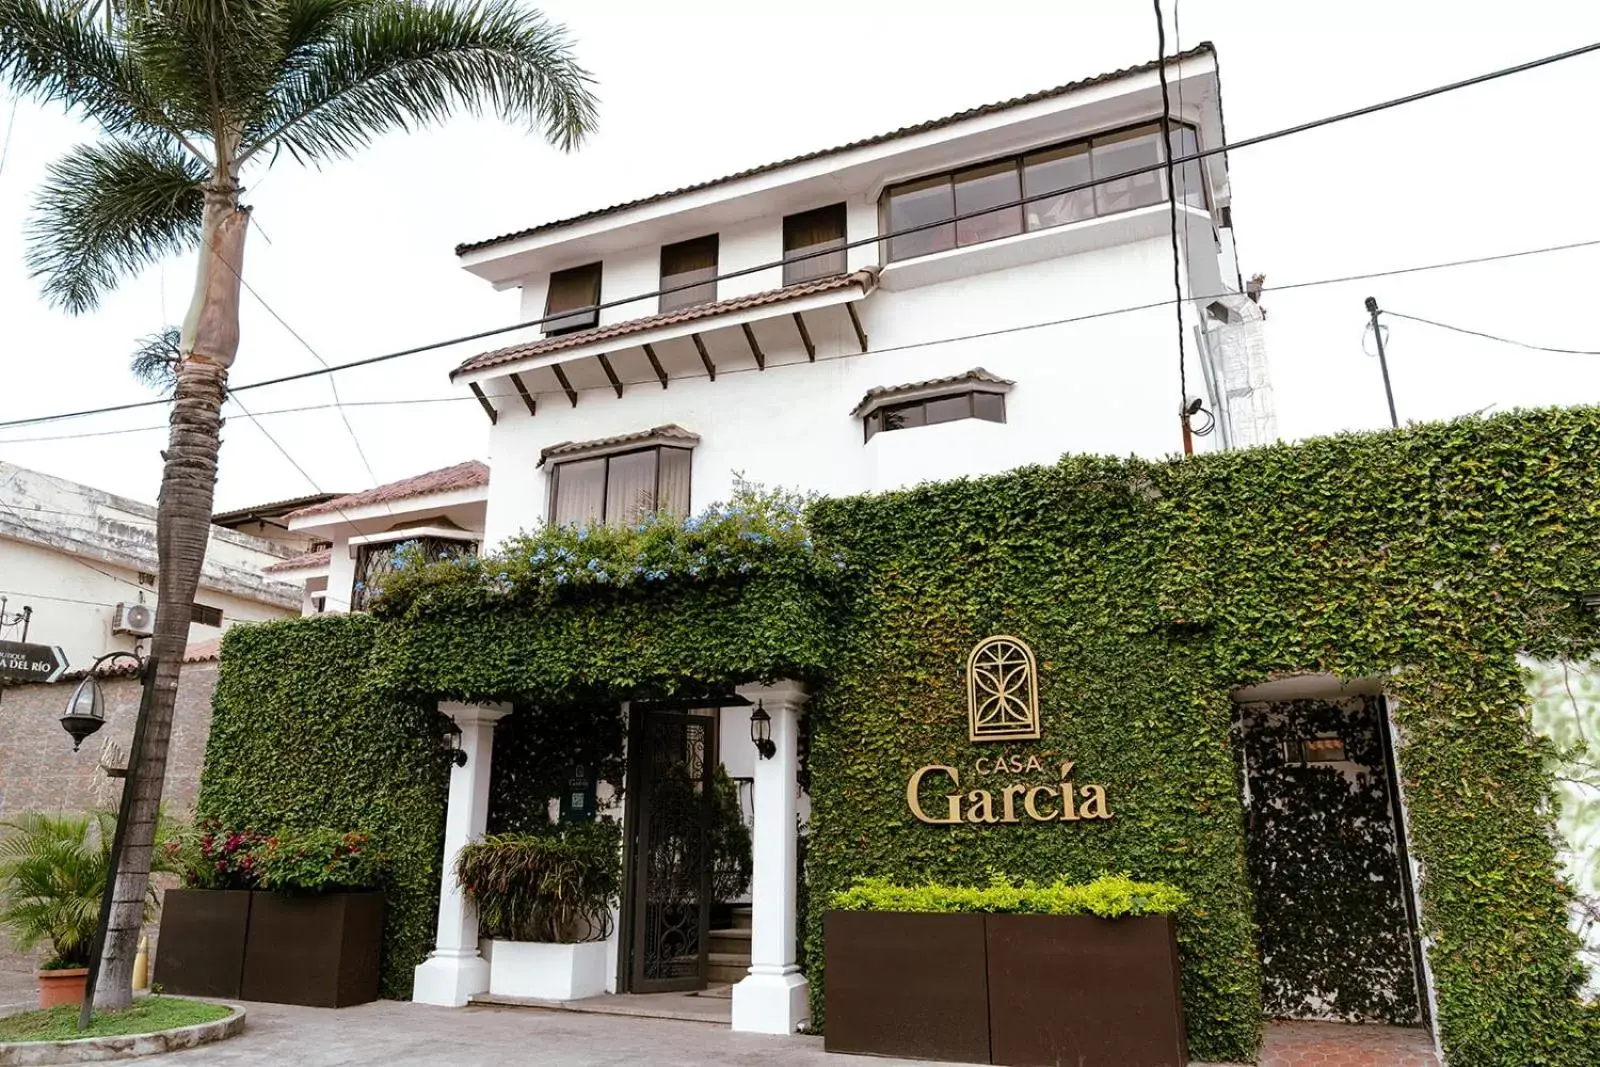 Property Building in Casa García